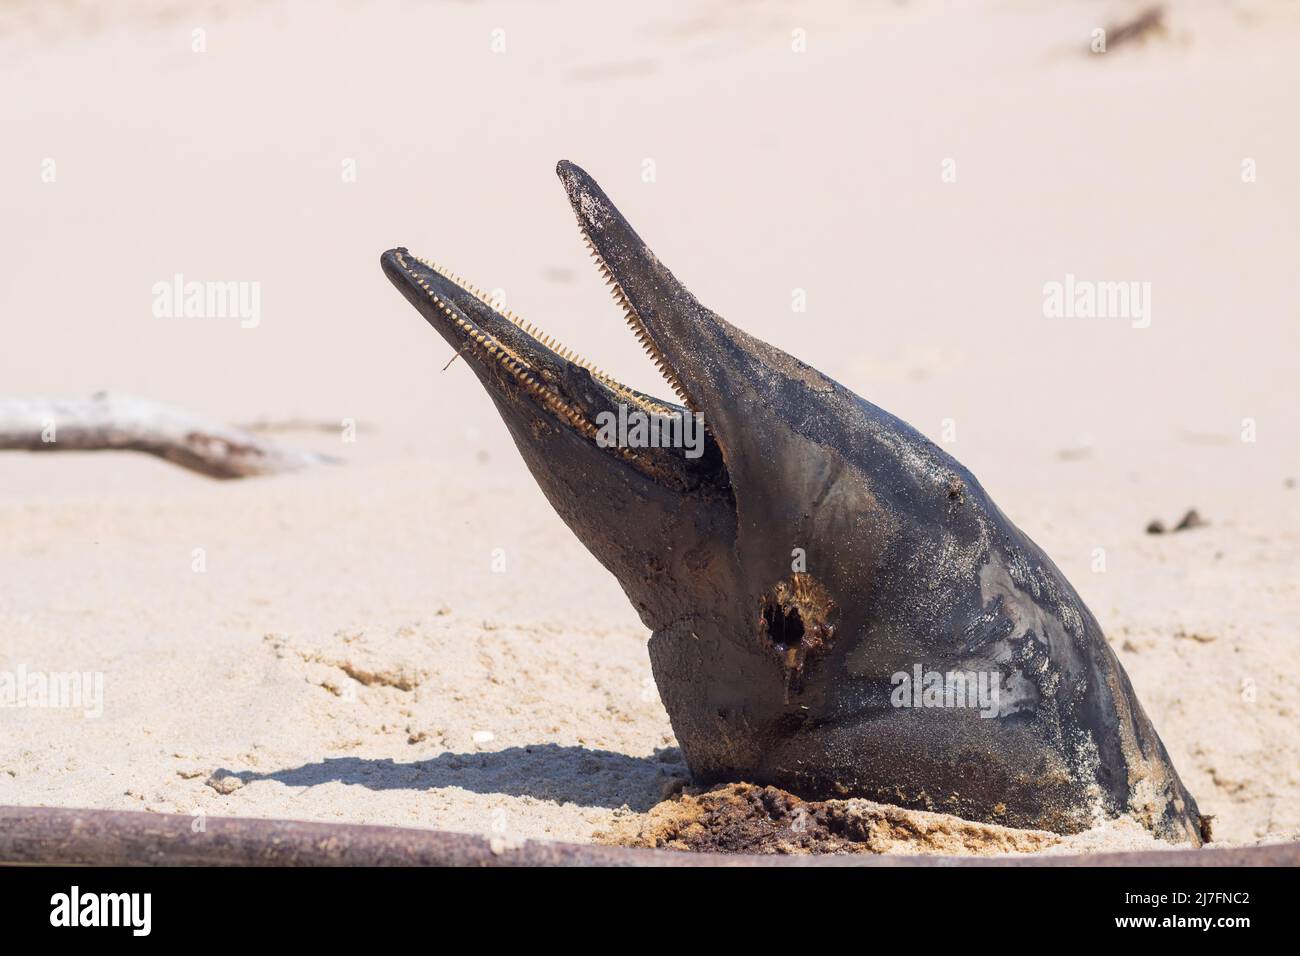 Una marsopa muerta enterrada lavó tierra en la etapa avanzada de descomposición con la cabeza saliendo de la arena y boca abierta Foto de stock